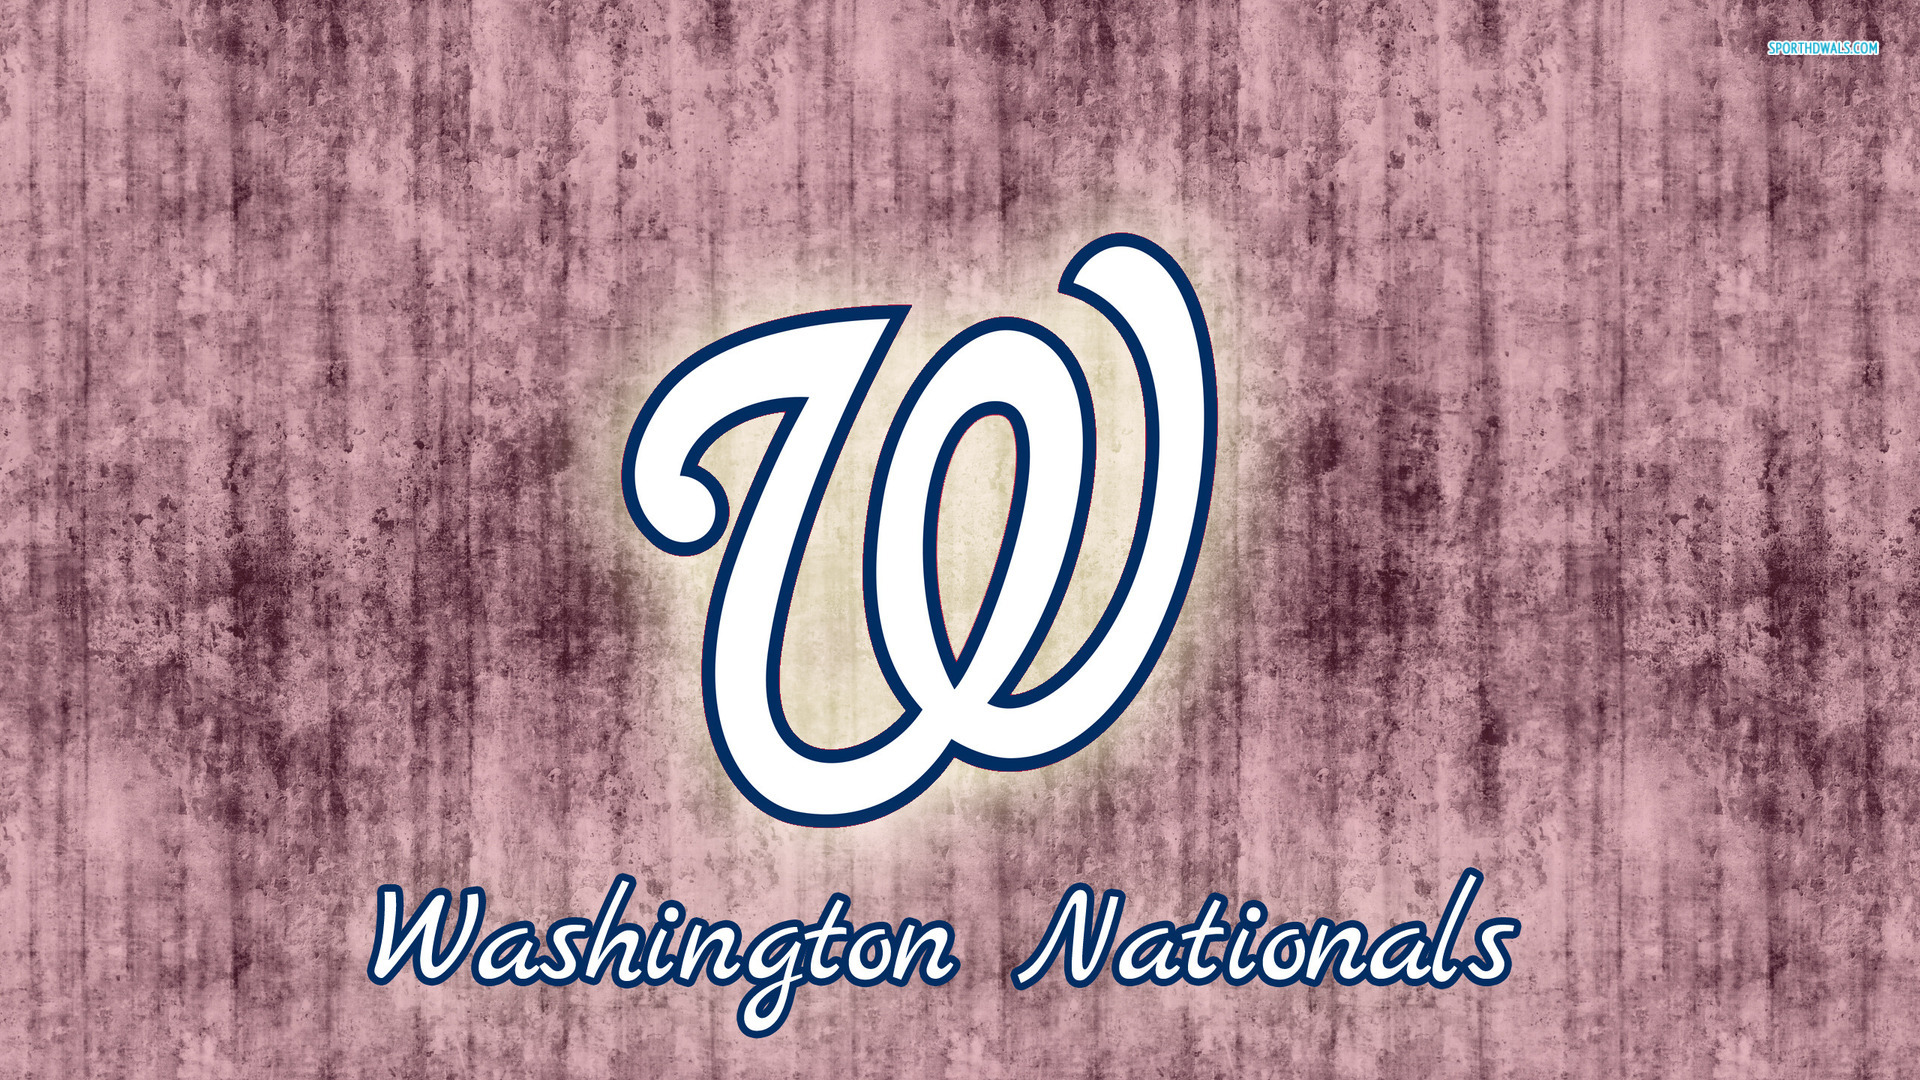 Washington Nationals HD Wallpaper